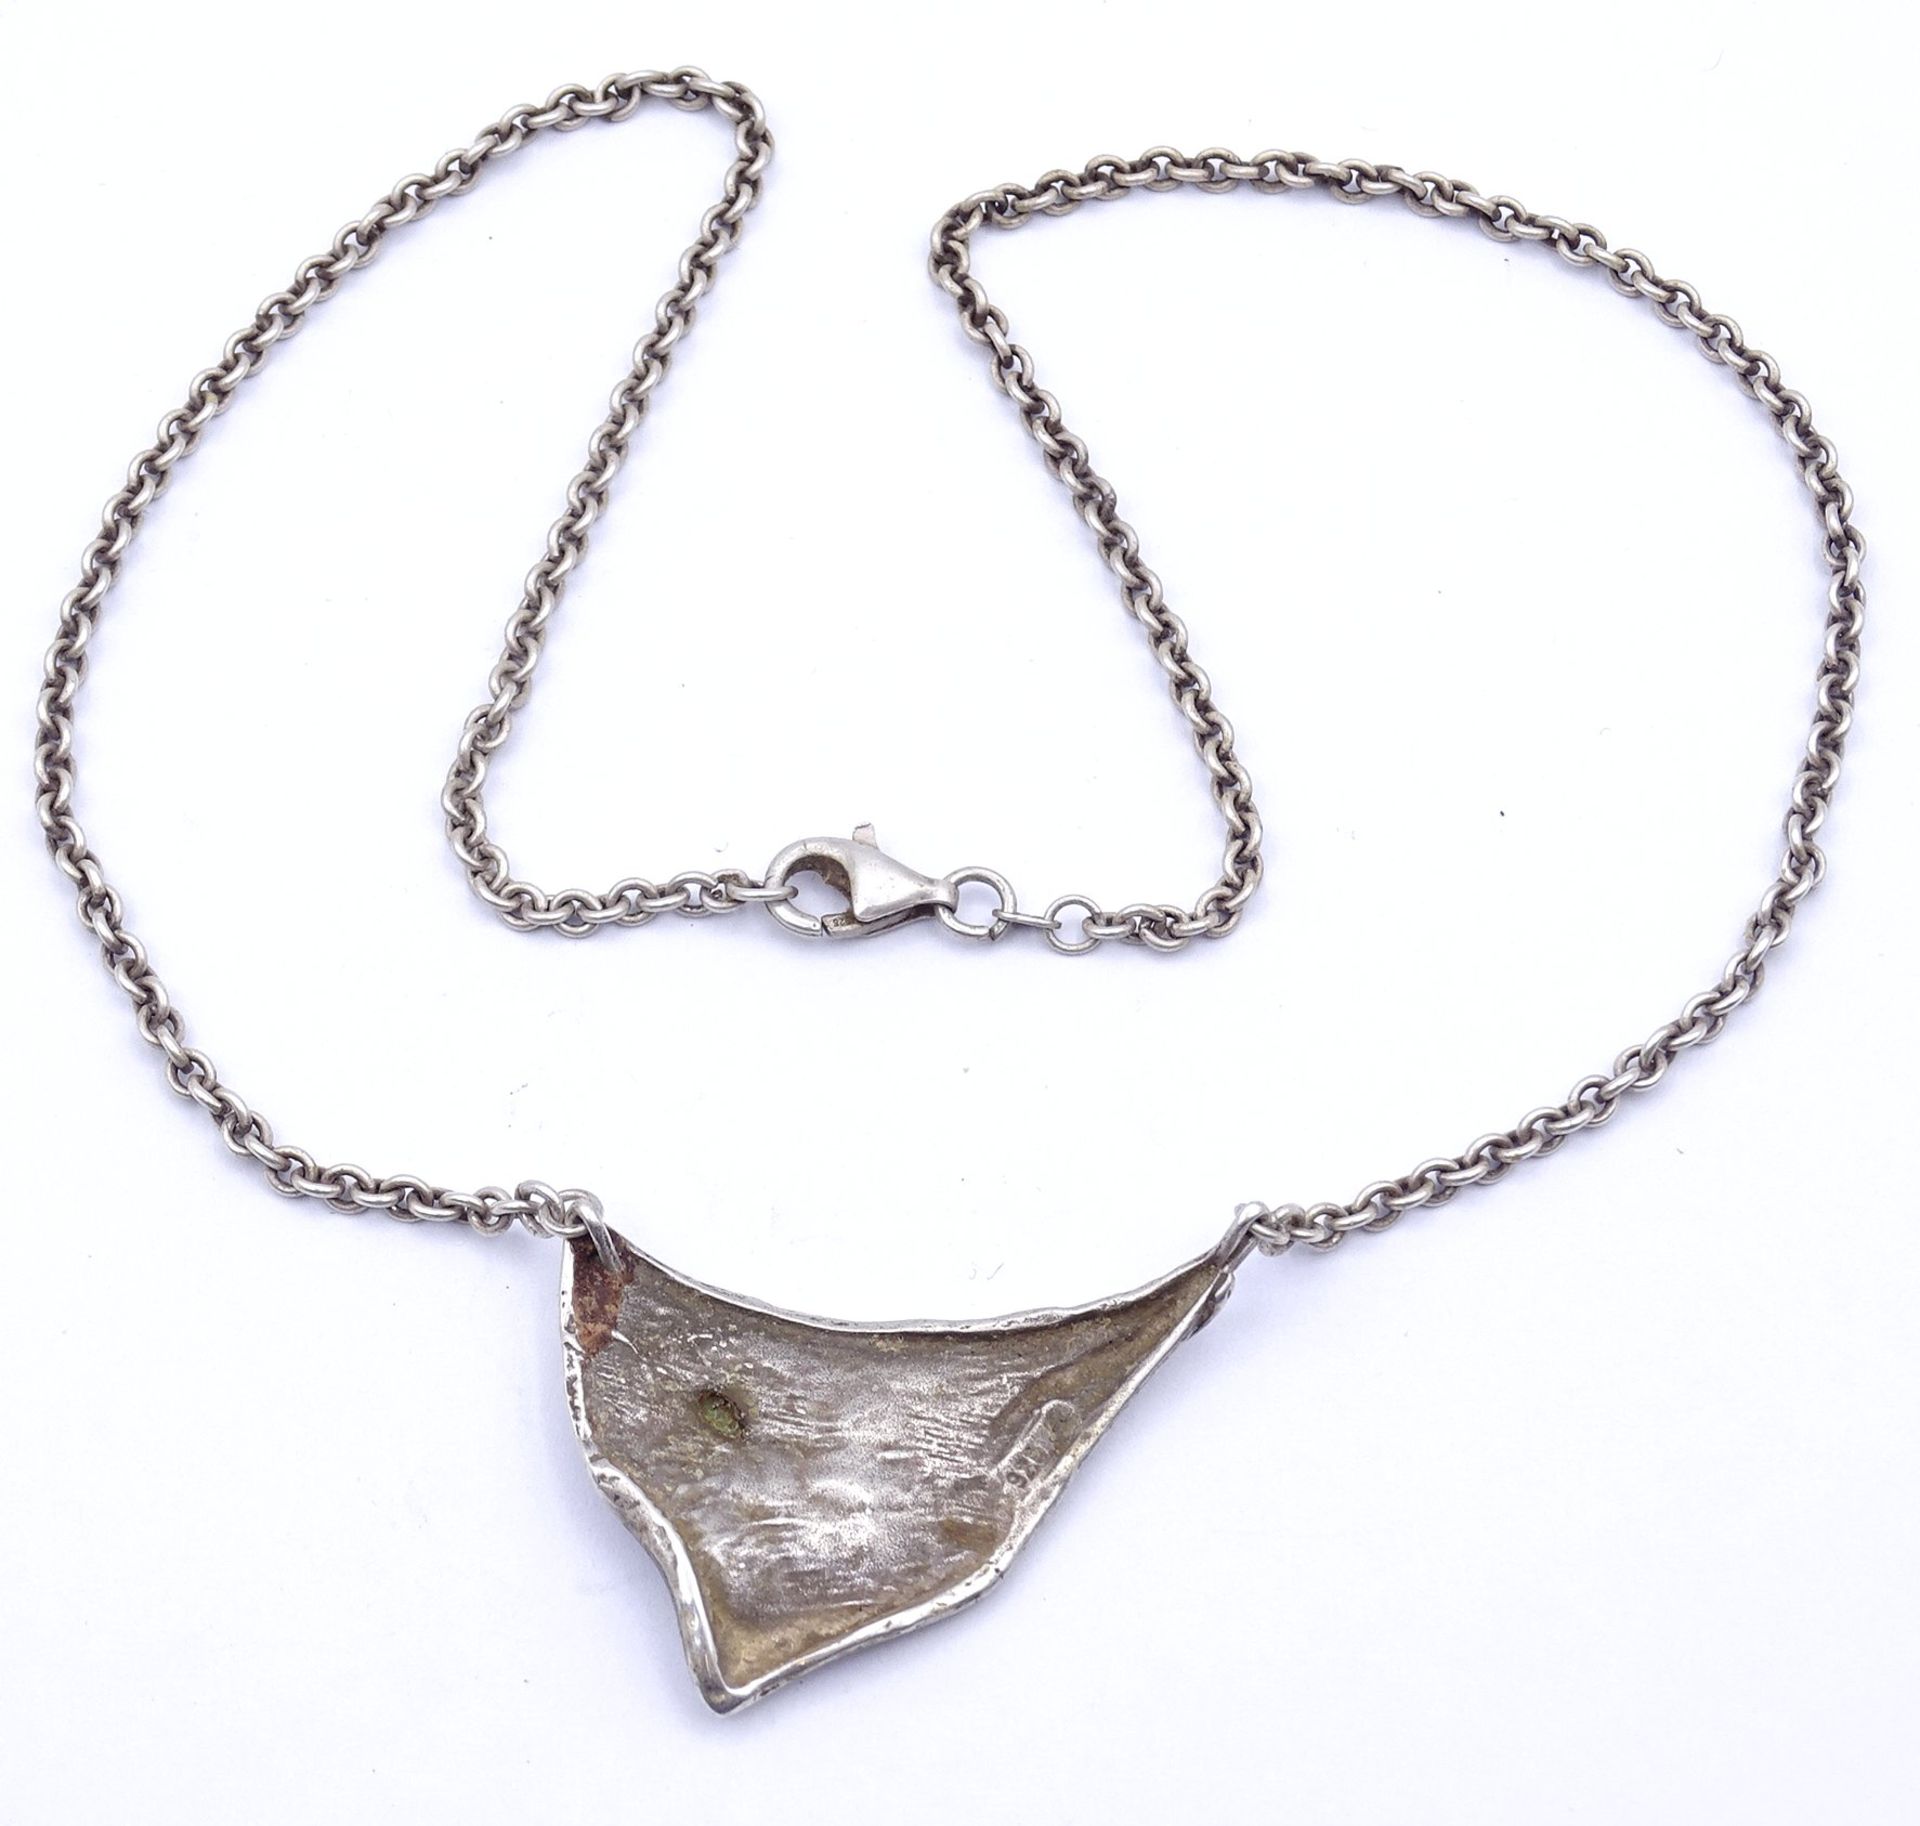 Halskette, Silber 0.925 mit Opal, L. 44cm, 13g. - Image 3 of 3